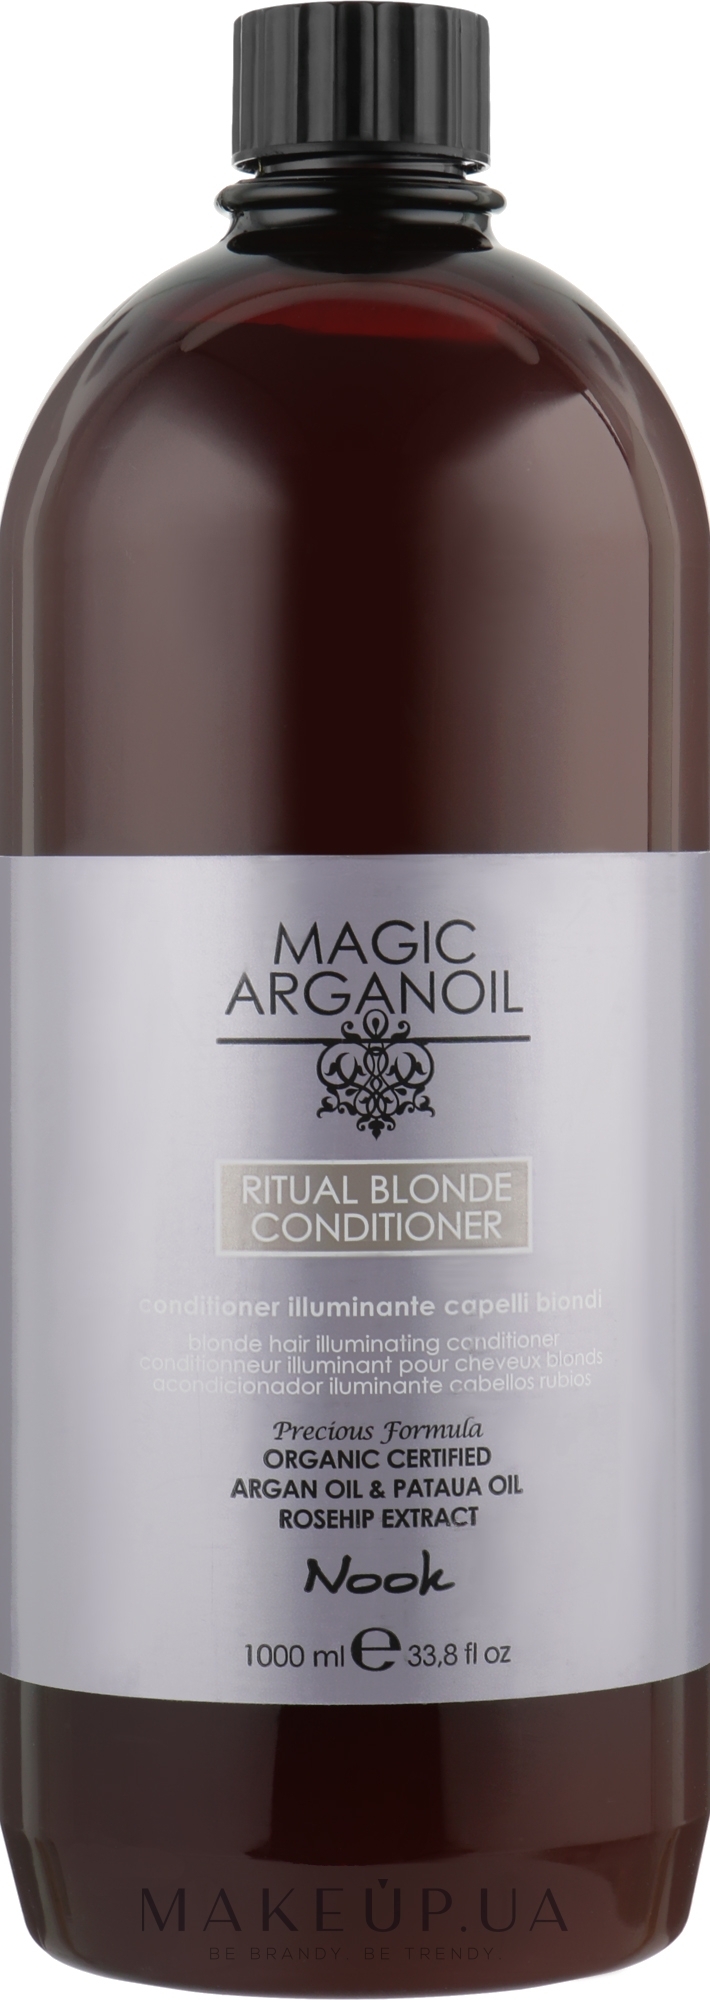 Кондиционер для сияния светлых волос - Nook Magic Arganoil Ritual Blonde Conditioner — фото 1000ml